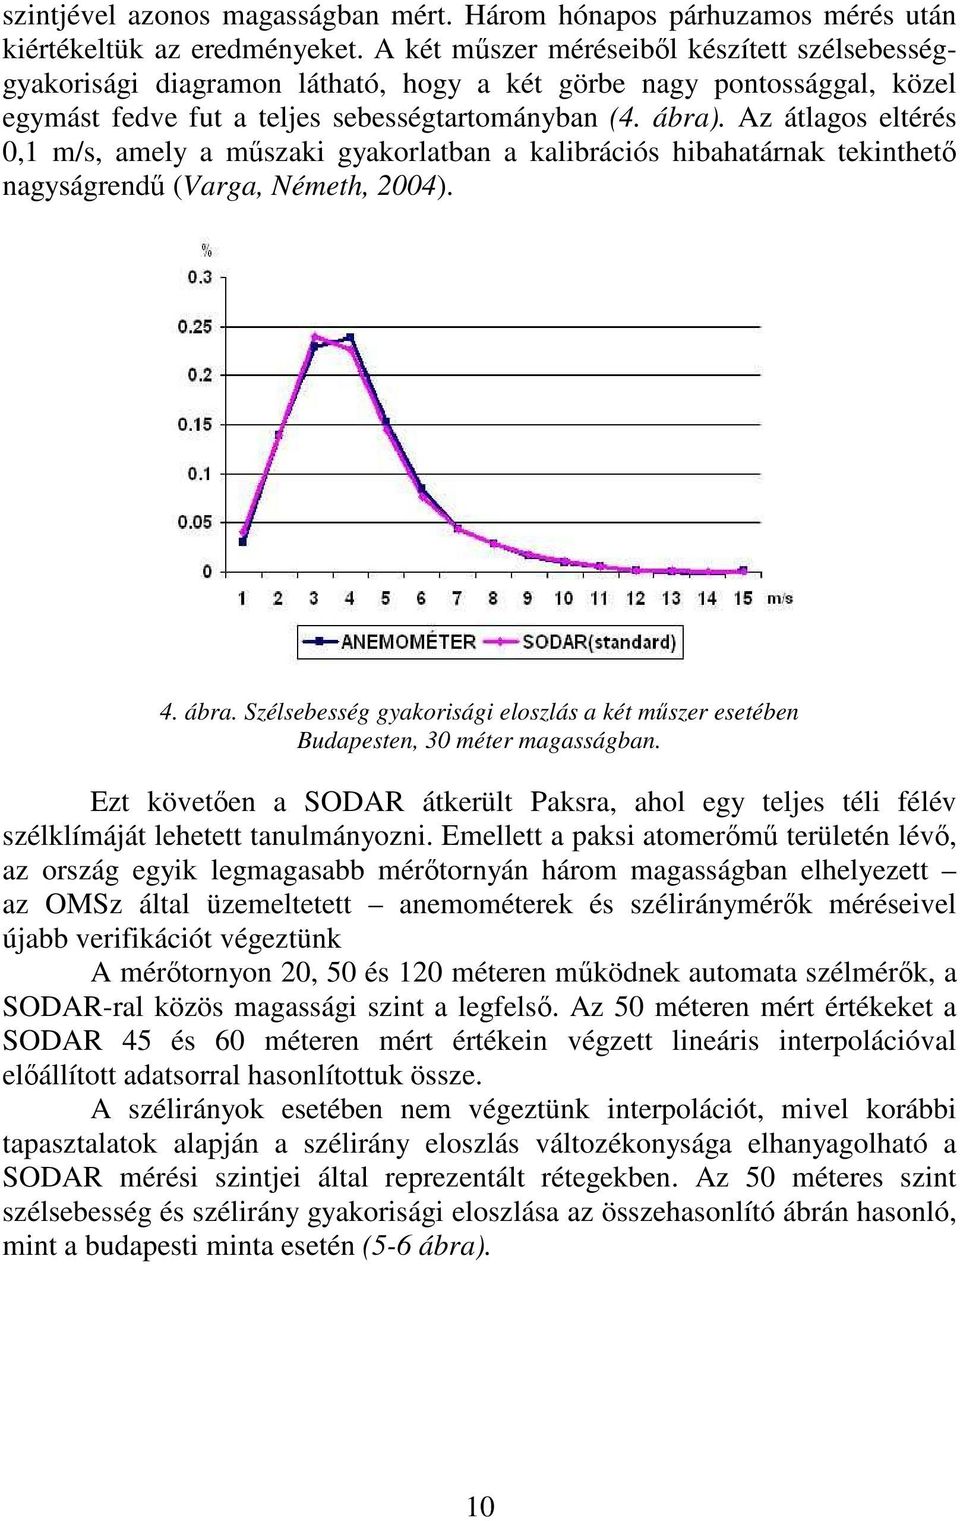 Az átlagos eltérés 0,1 m/s, amely a mőszaki gyakorlatban a kalibrációs hibahatárnak tekinthetı nagyságrendő (Varga, Németh, 2004). 4. ábra.